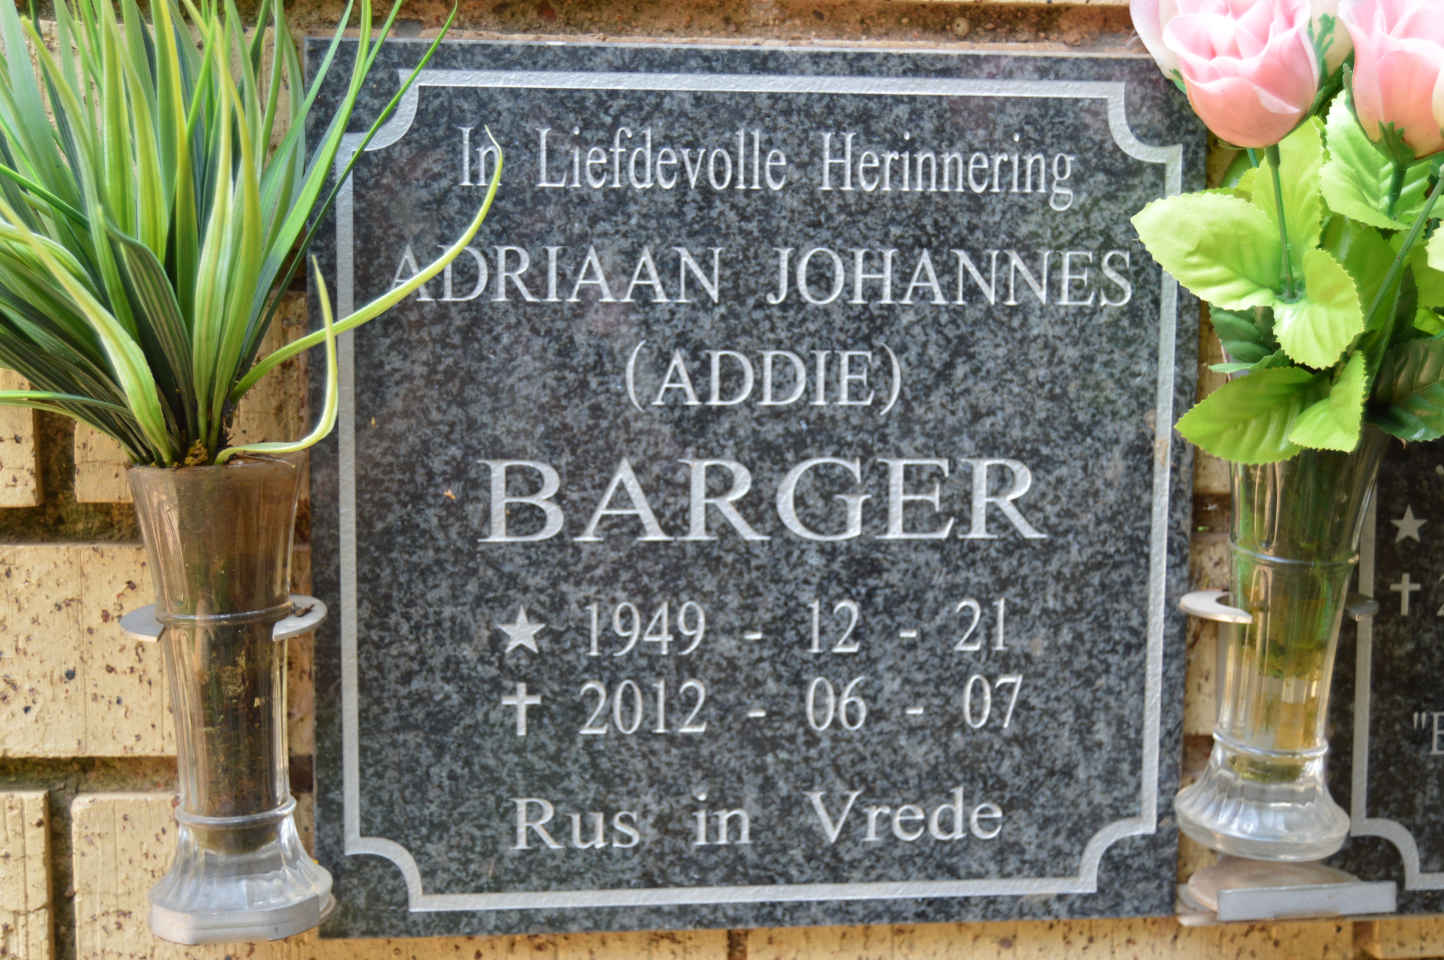 BARGER Adriaan Johannes 1949-2012